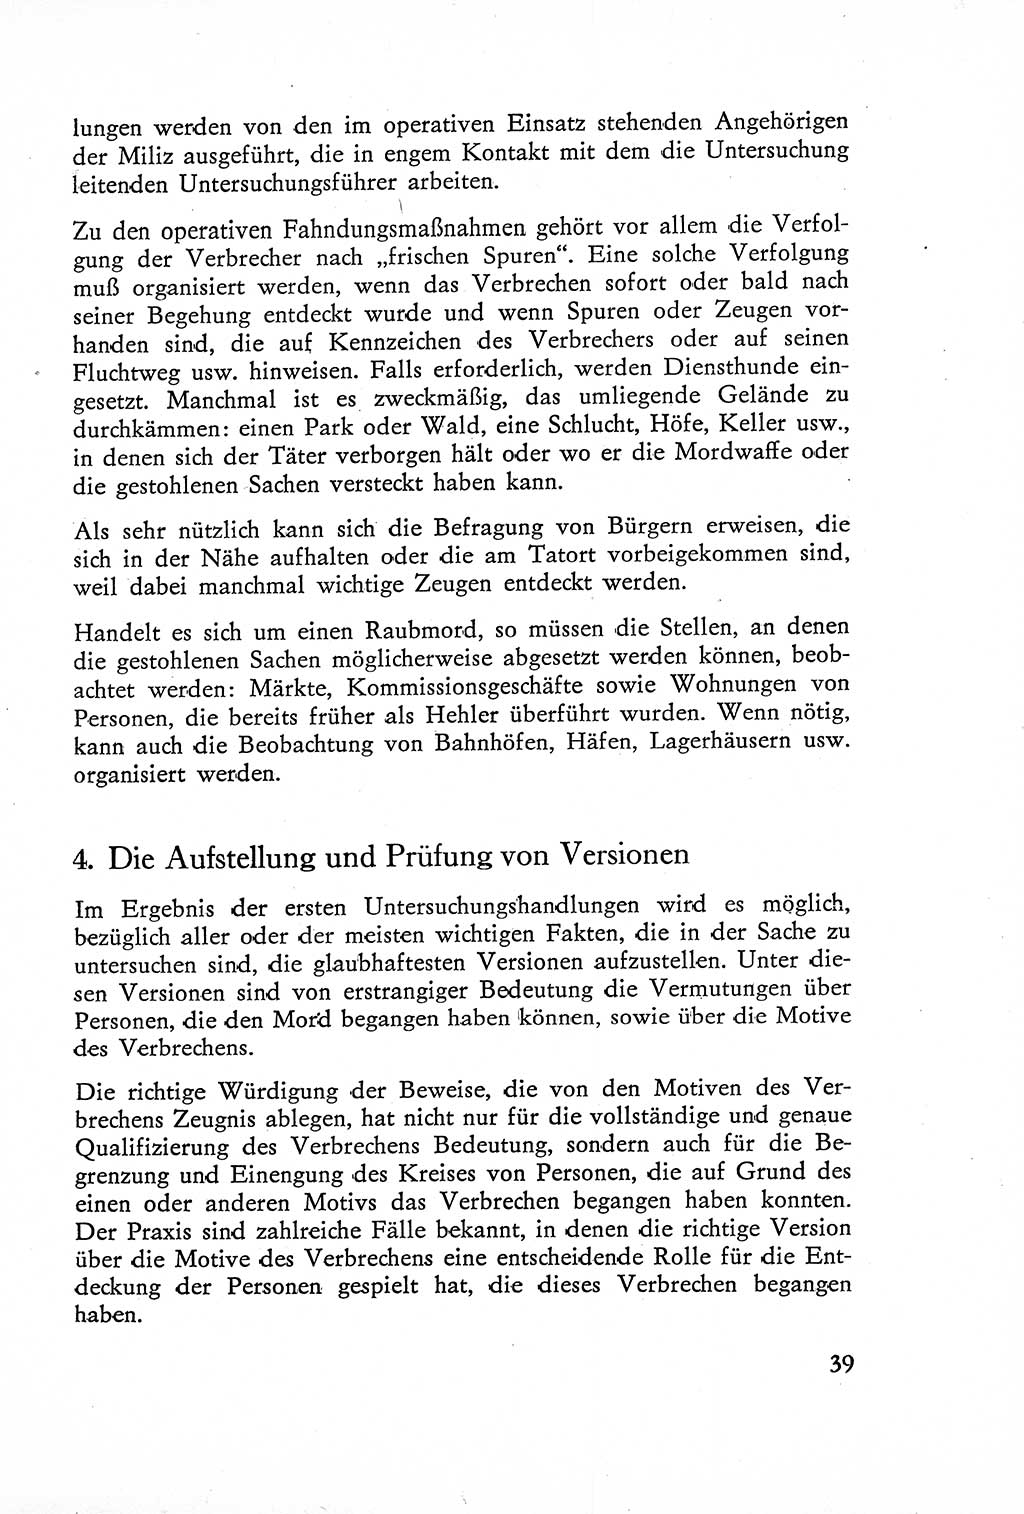 Die Untersuchung einzelner Verbrechensarten [Deutsche Demokratische Republik (DDR)] 1960, Seite 39 (Unters. Verbr.-Art. DDR 1960, S. 39)